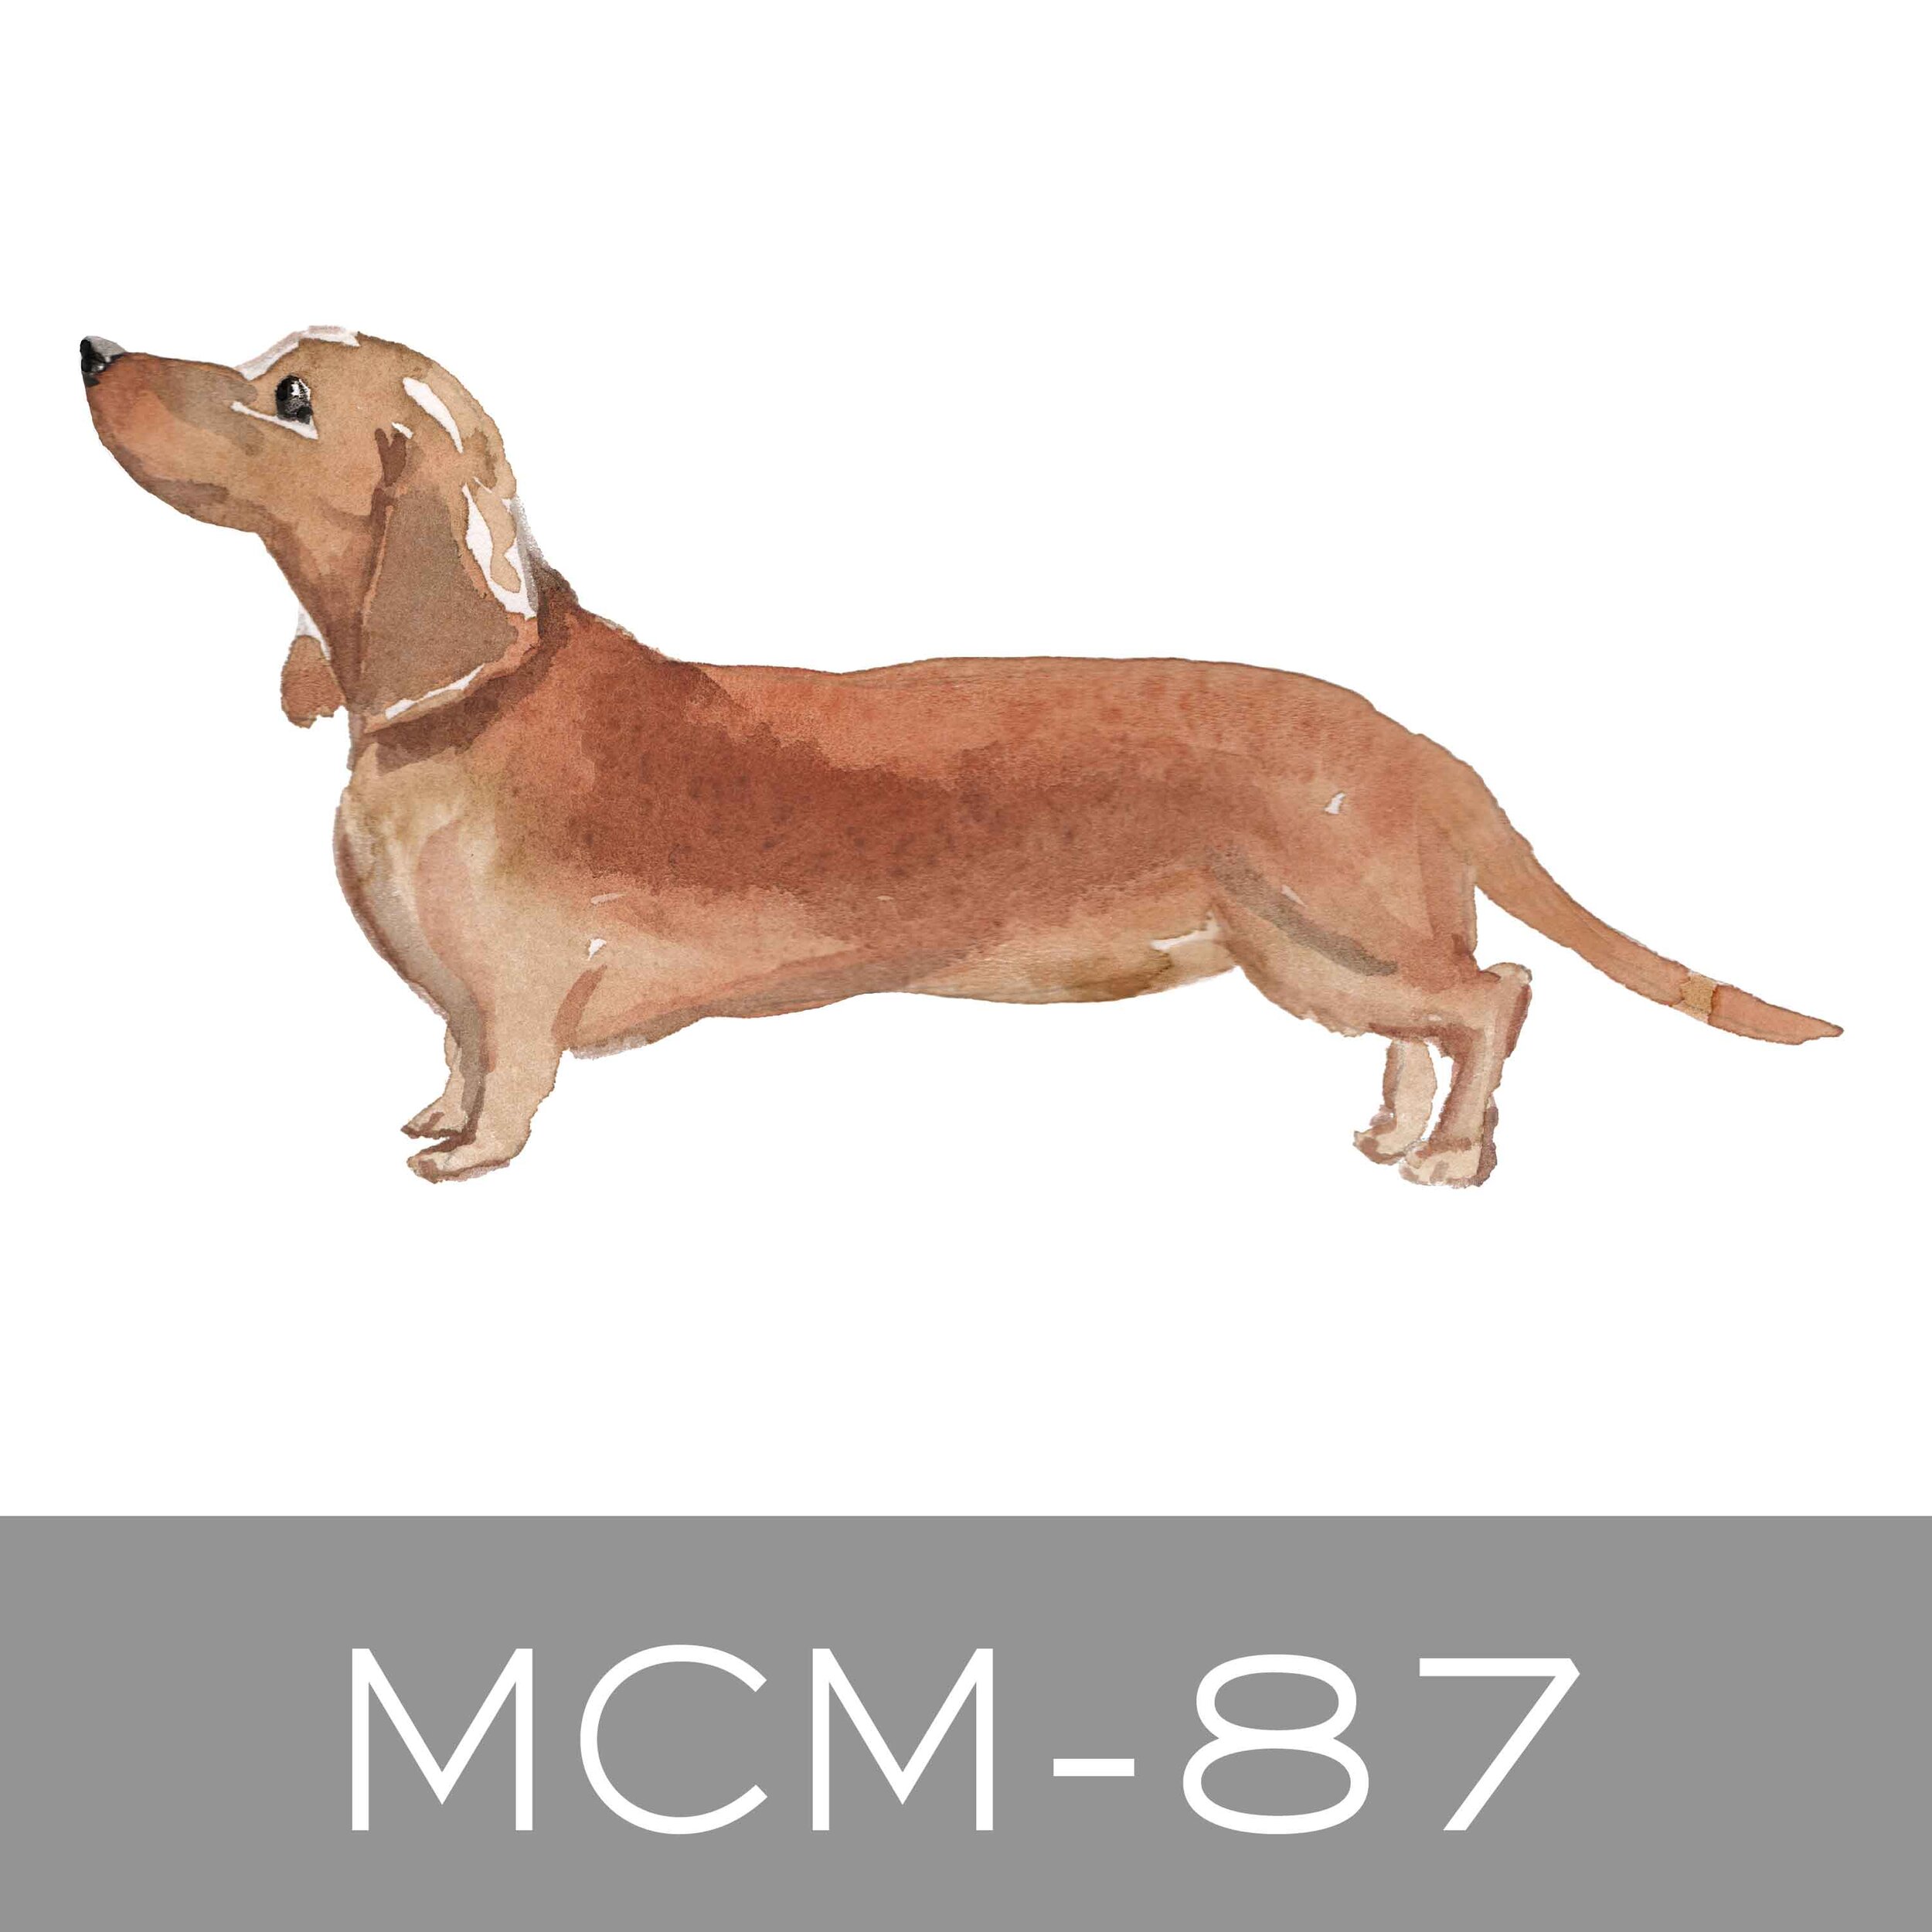 MCM-87.jpg